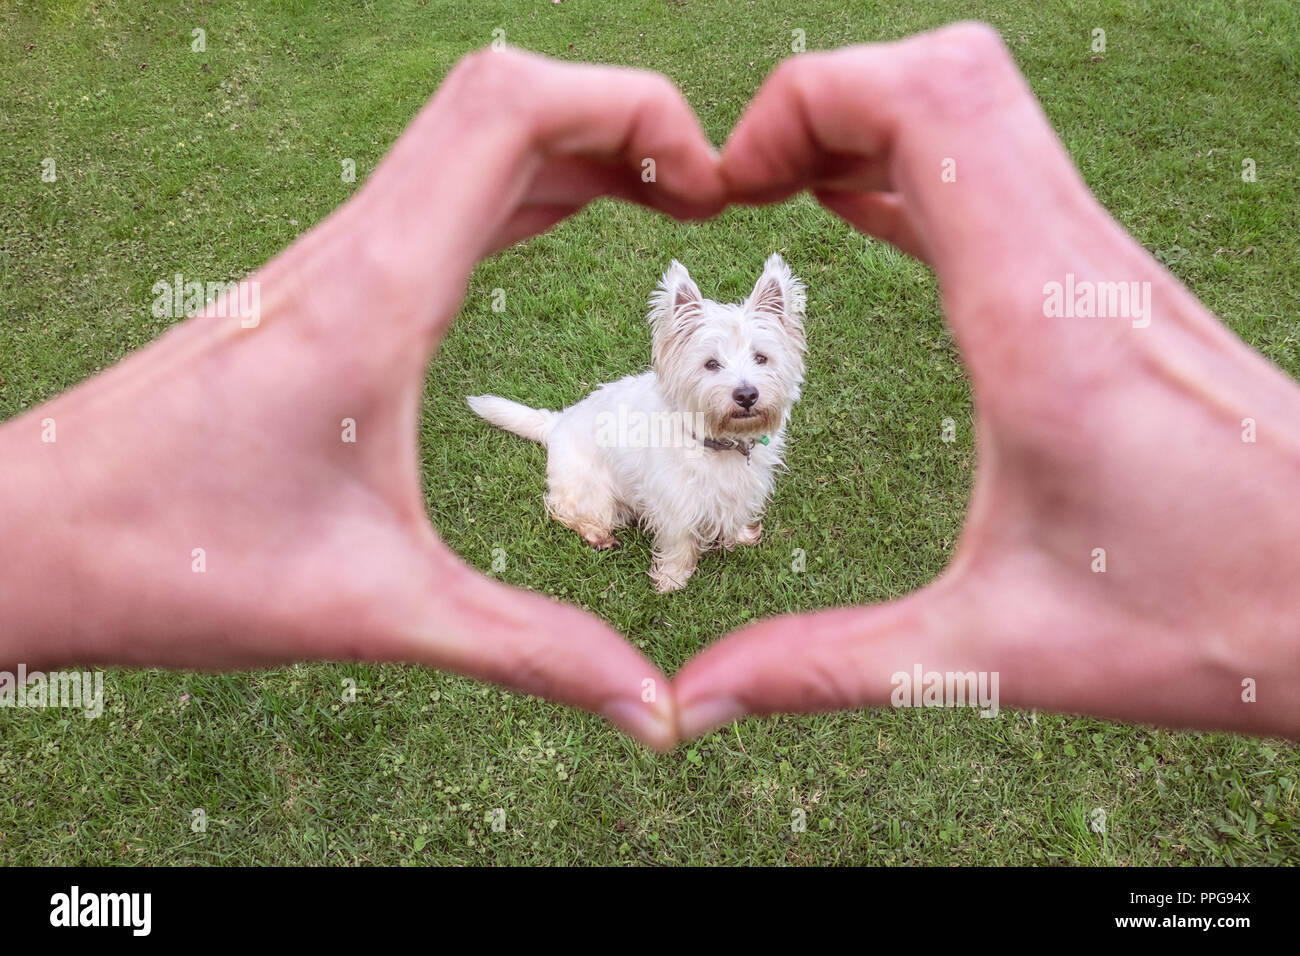 Liebe ein guter Hund: Hände und Herzen Form um niedliche West Highland Terrier westie - Behandlung und Pflege von Haustieren Stockfoto